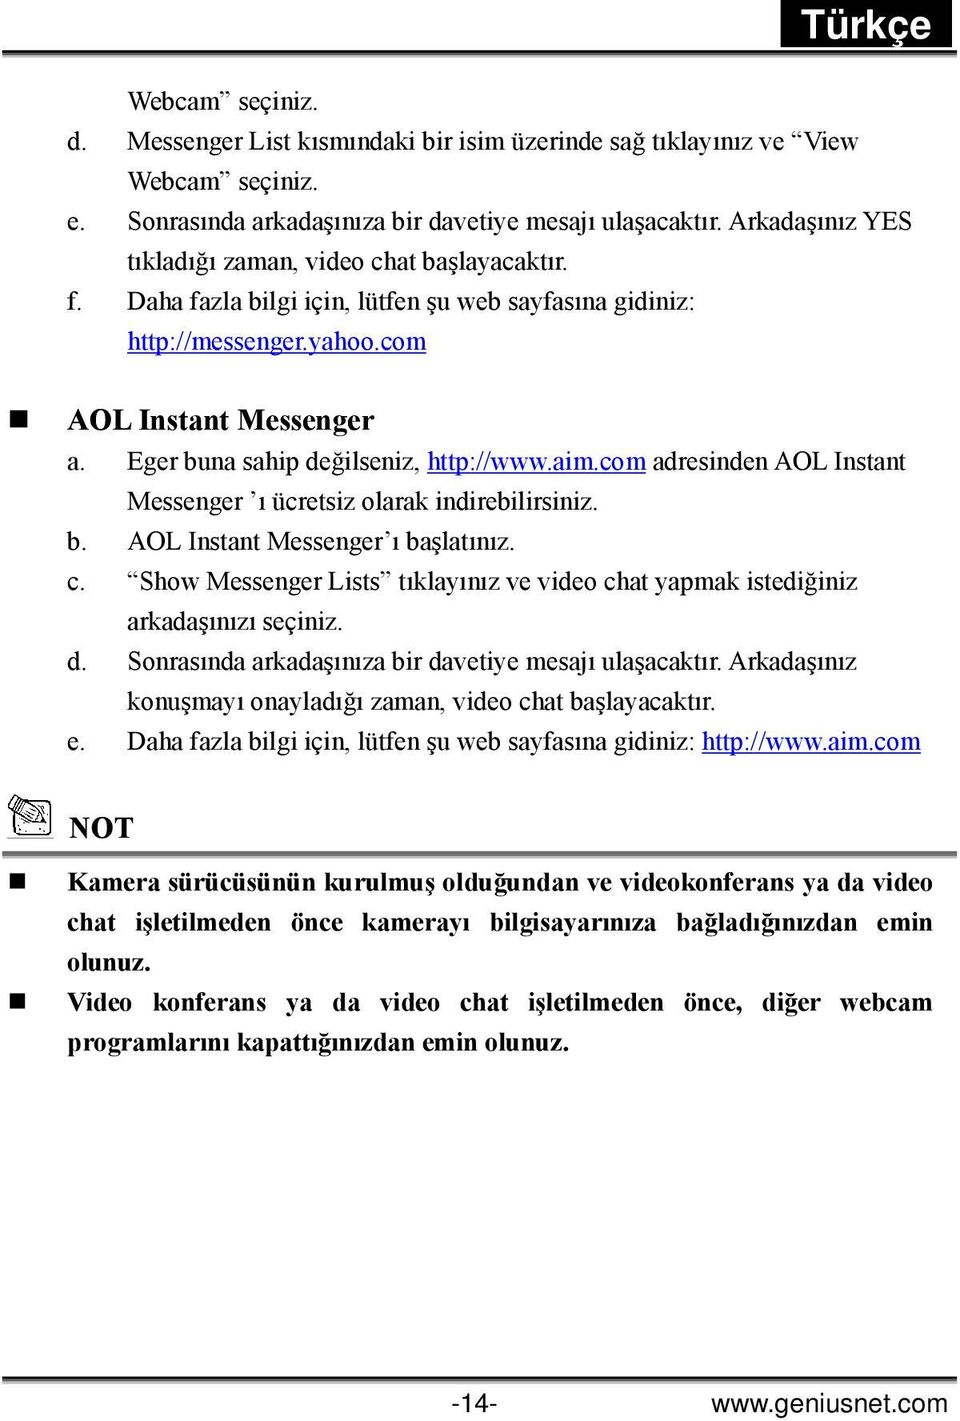 Eger buna sahip değilseniz, http://www.aim.com adresinden AOL Instant Messenger ı ücretsiz olarak indirebilirsiniz. b. AOL Instant Messenger ı başlatınız. c.